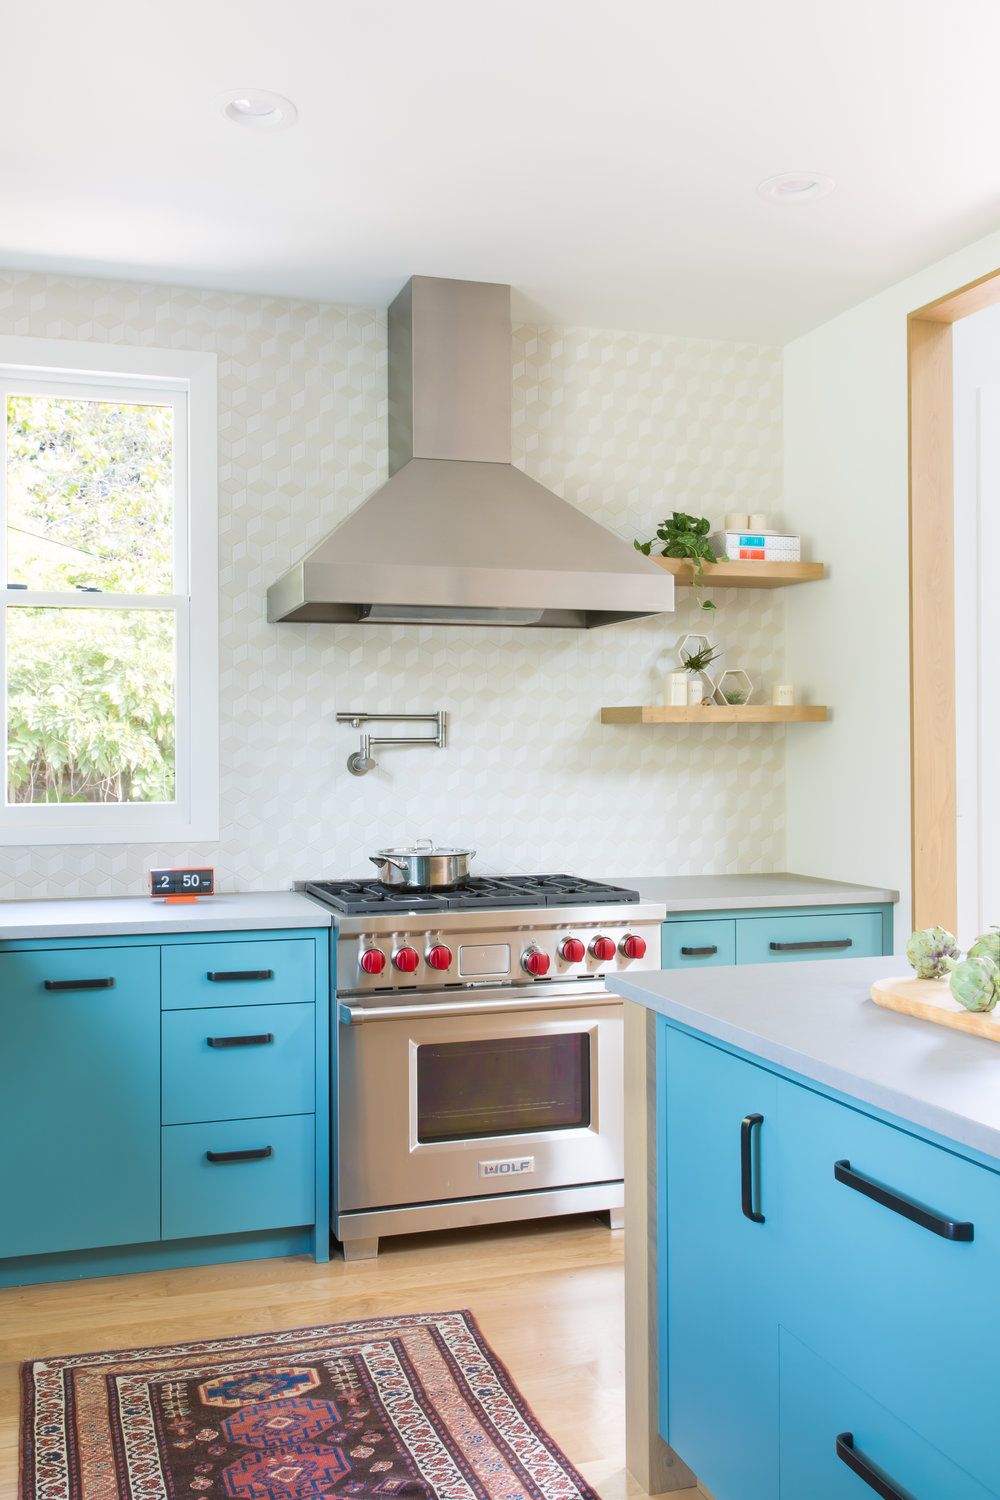 Amazing kitchen colors images 43 Best Kitchen Paint Colors Ideas For Popular